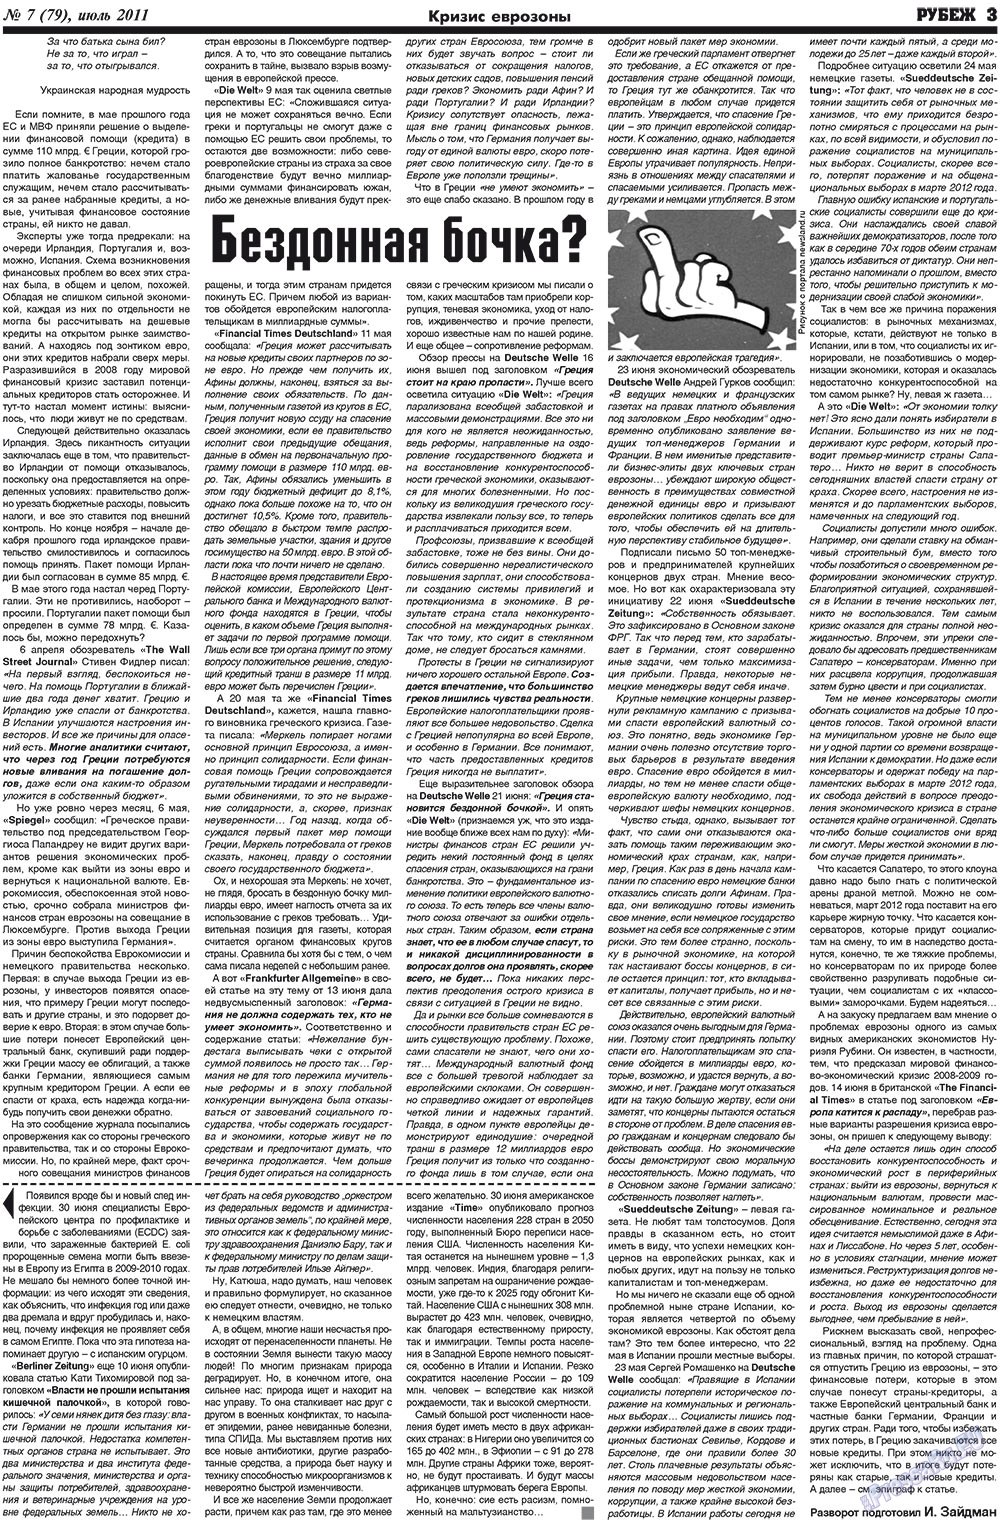 Рубеж (газета). 2011 год, номер 7, стр. 3